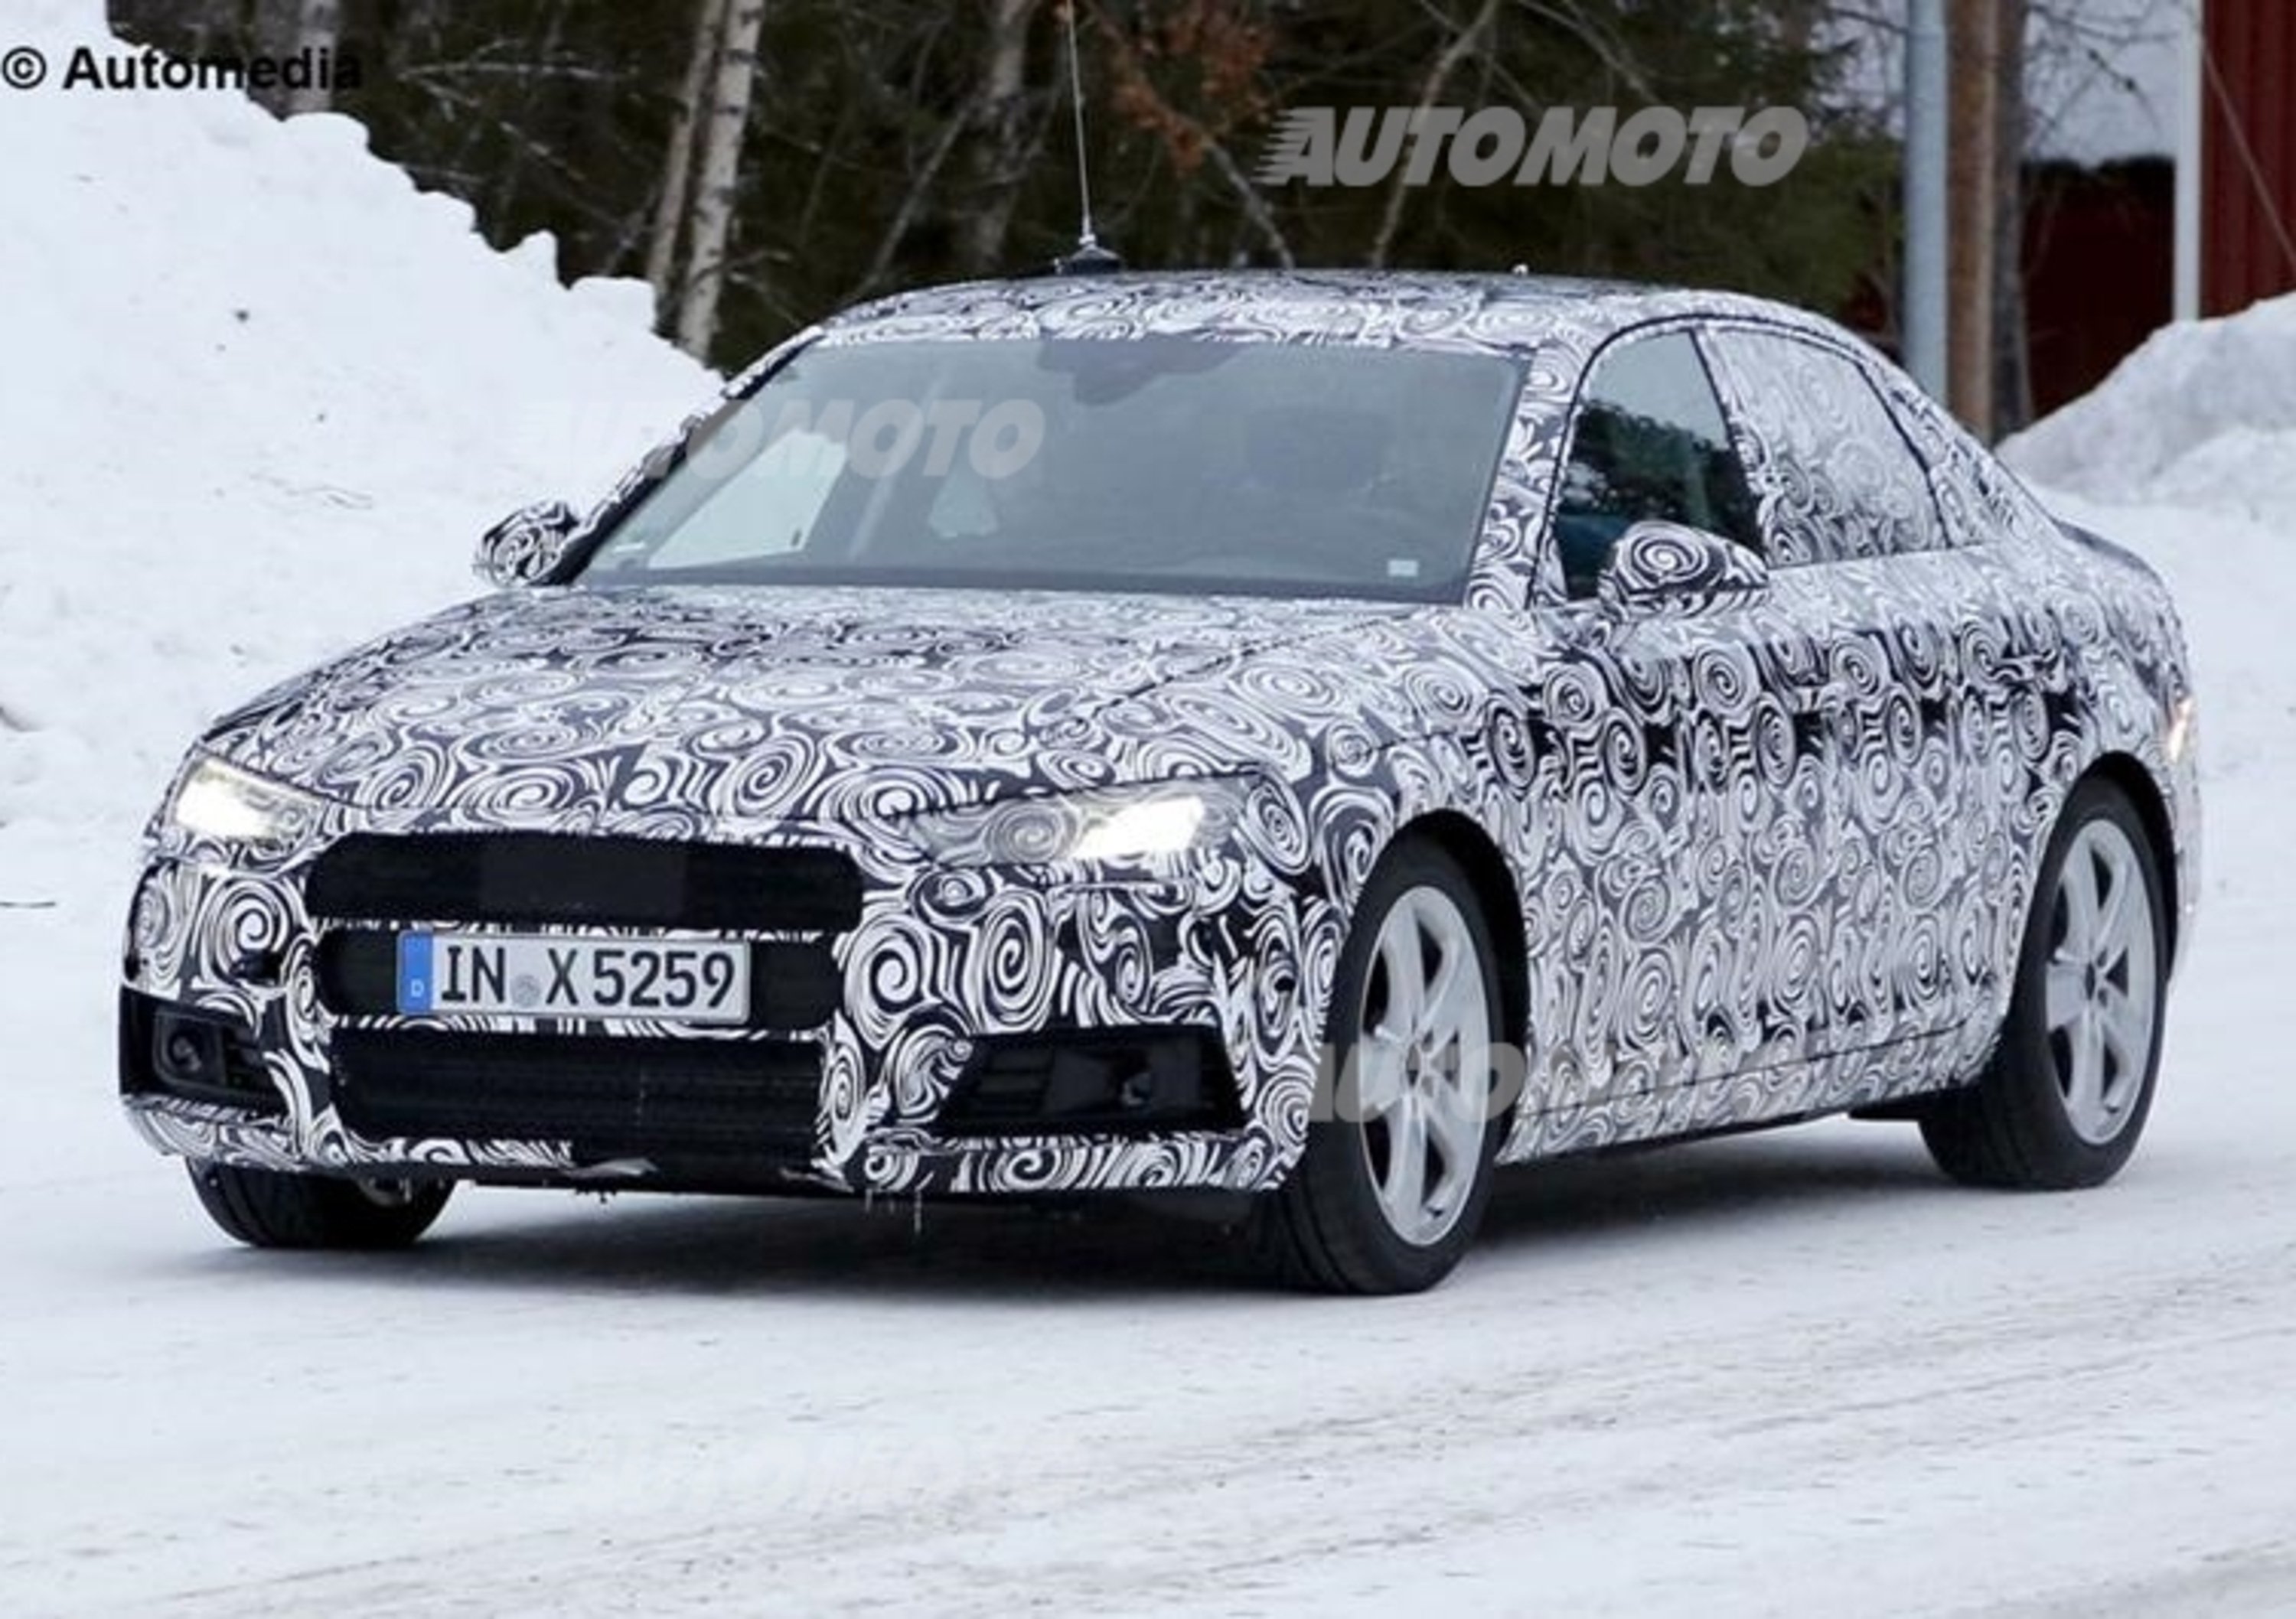 Nuova Audi A4: il muletto svela il design dei fari led